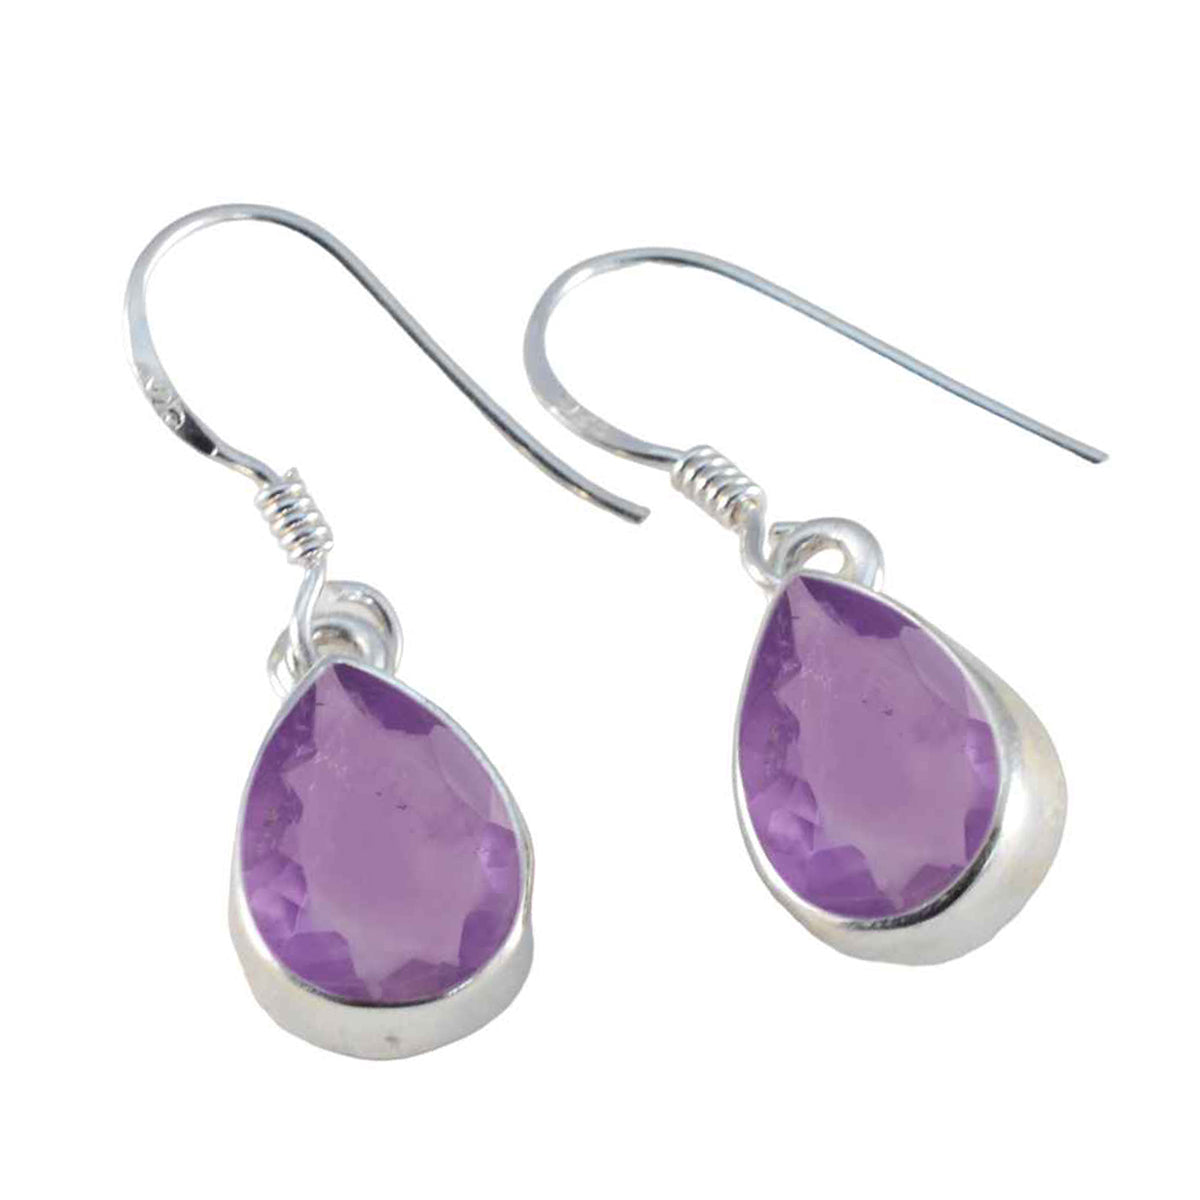 Riyo Bonny Sterling Silver Earring For Sister Amethyst Earring Bezel Setting Purple Earring Dangle Earring